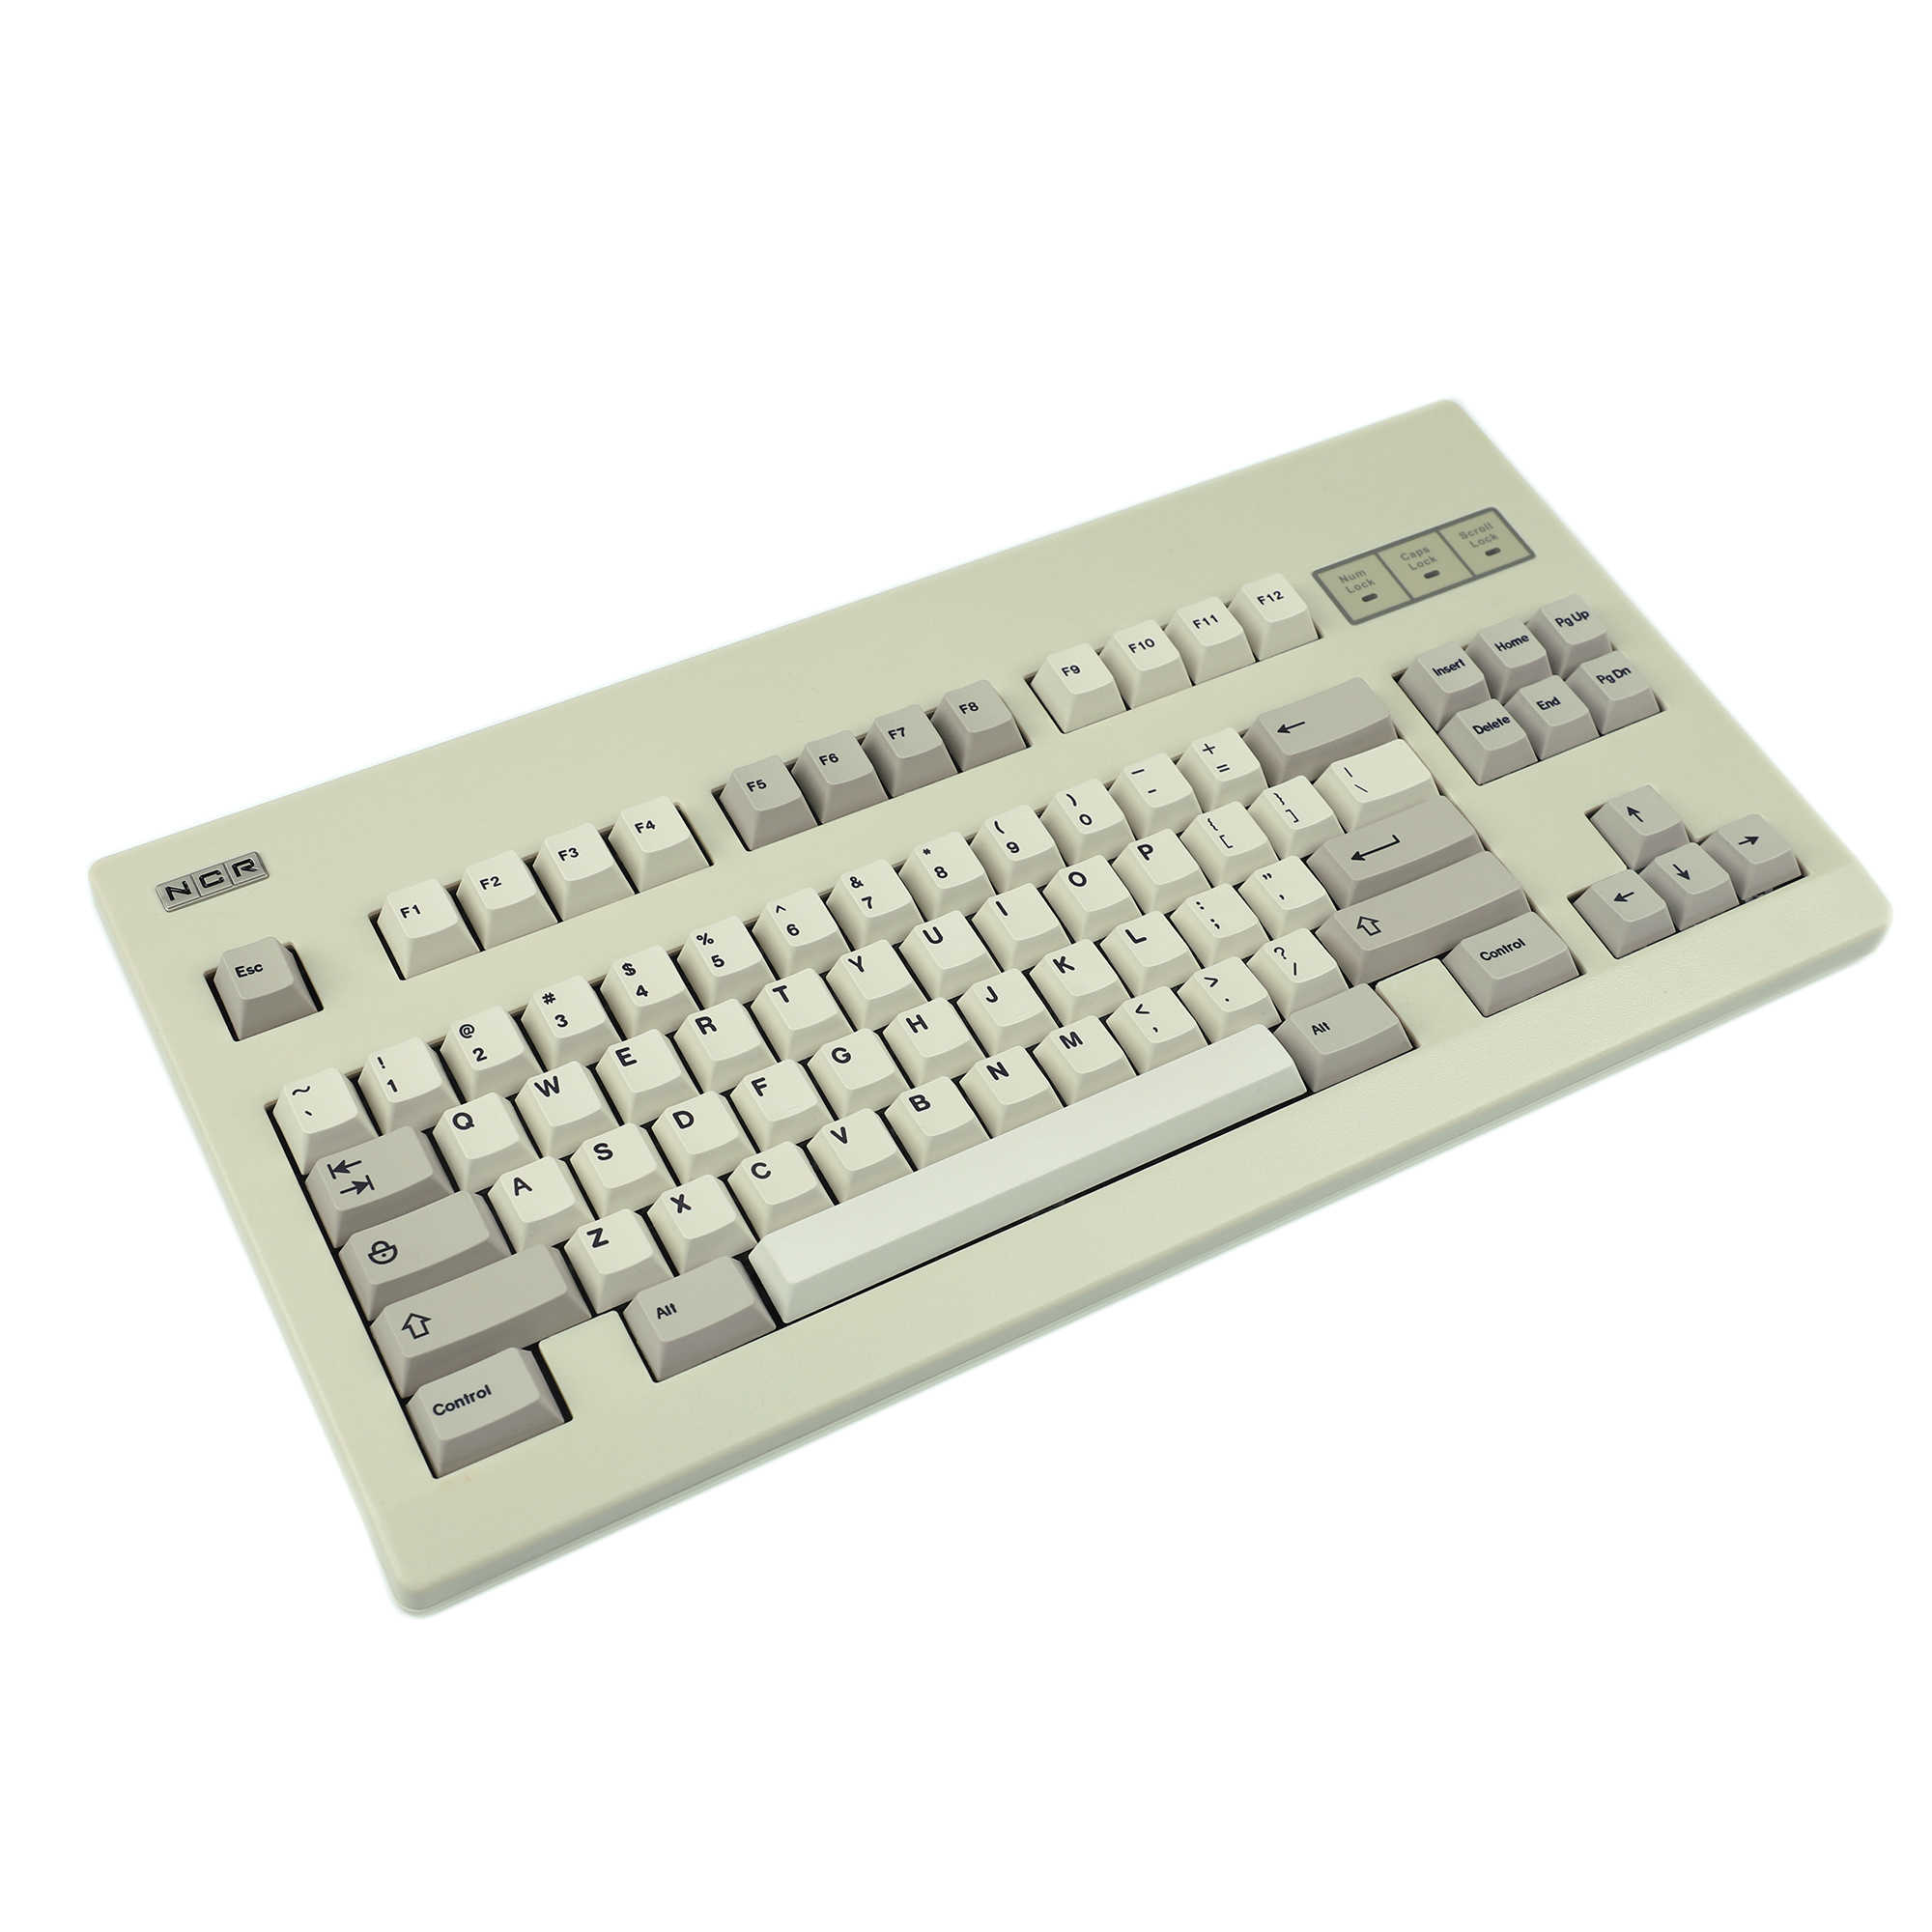 キーボード143シェンポキーキャップチェリープロファイルダイサブ厚いPBT MACキーキャップセットANSI104 TKL GK61 96 75 GMMK NCR80 MXキーボードT230215